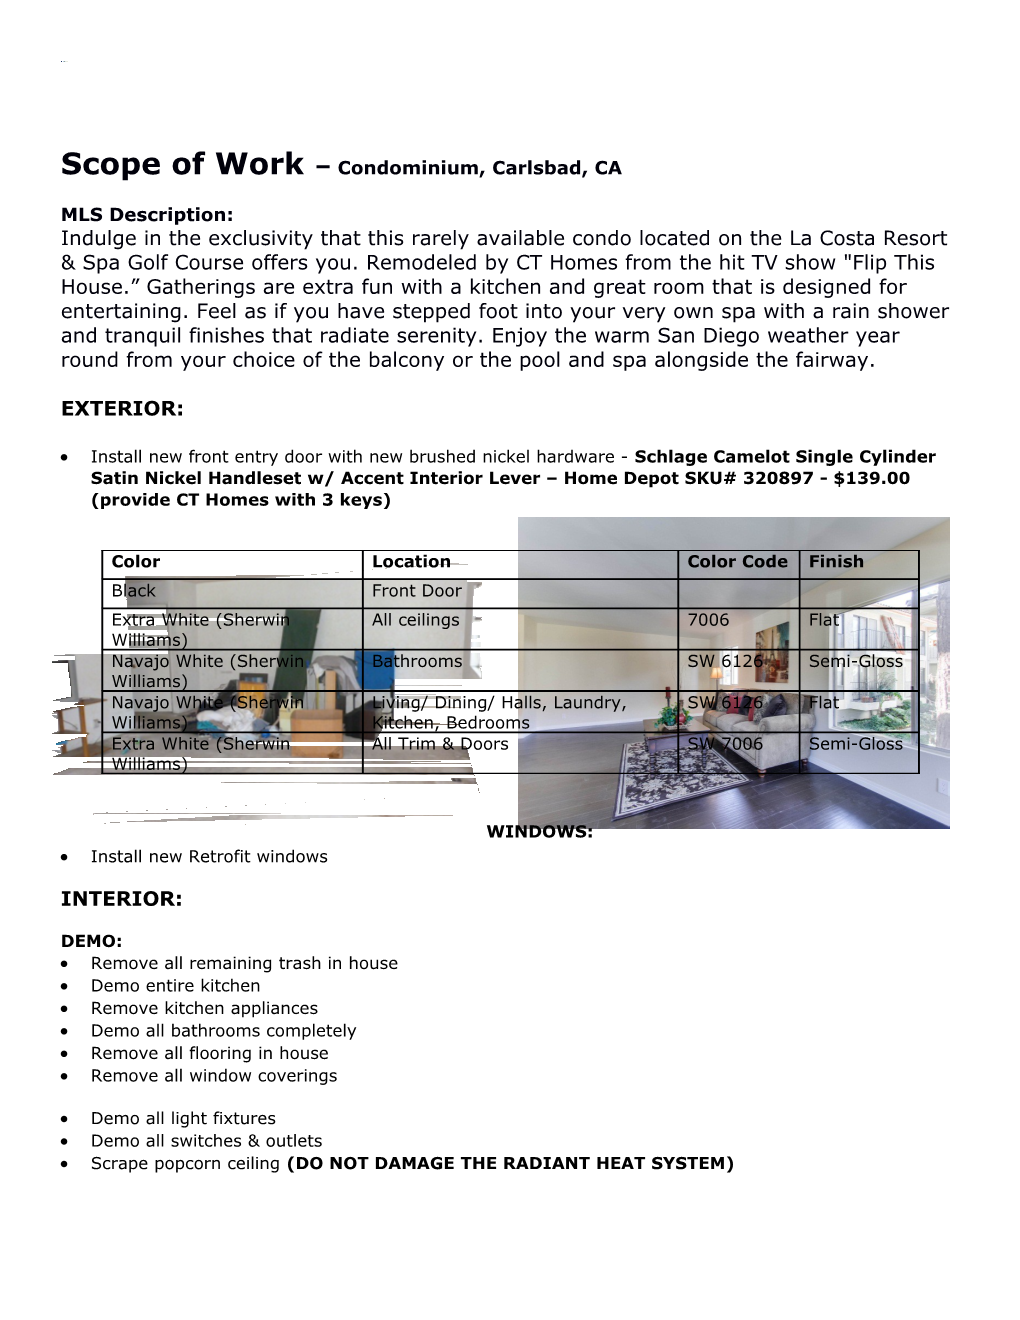 Scope of Work Condominium, Carlsbad, CA